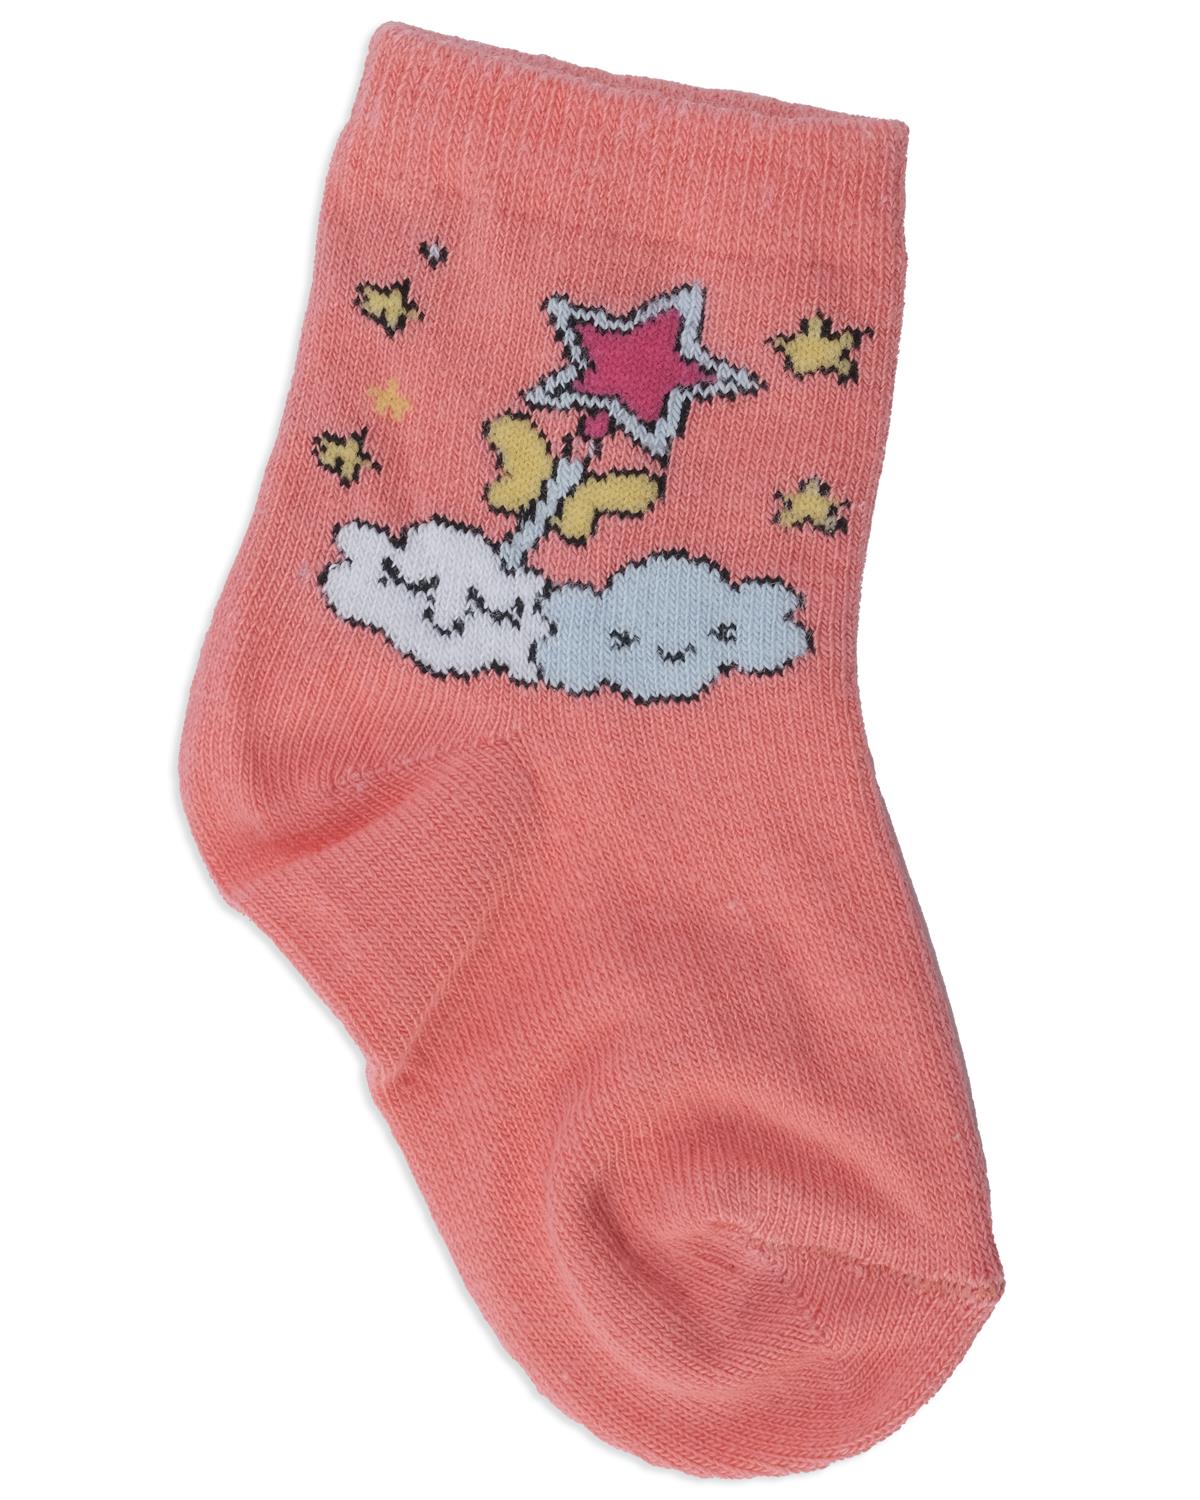 Kız Çocuk Yıldız Desenli Baskılı Bilek Çorap 3'lü Set